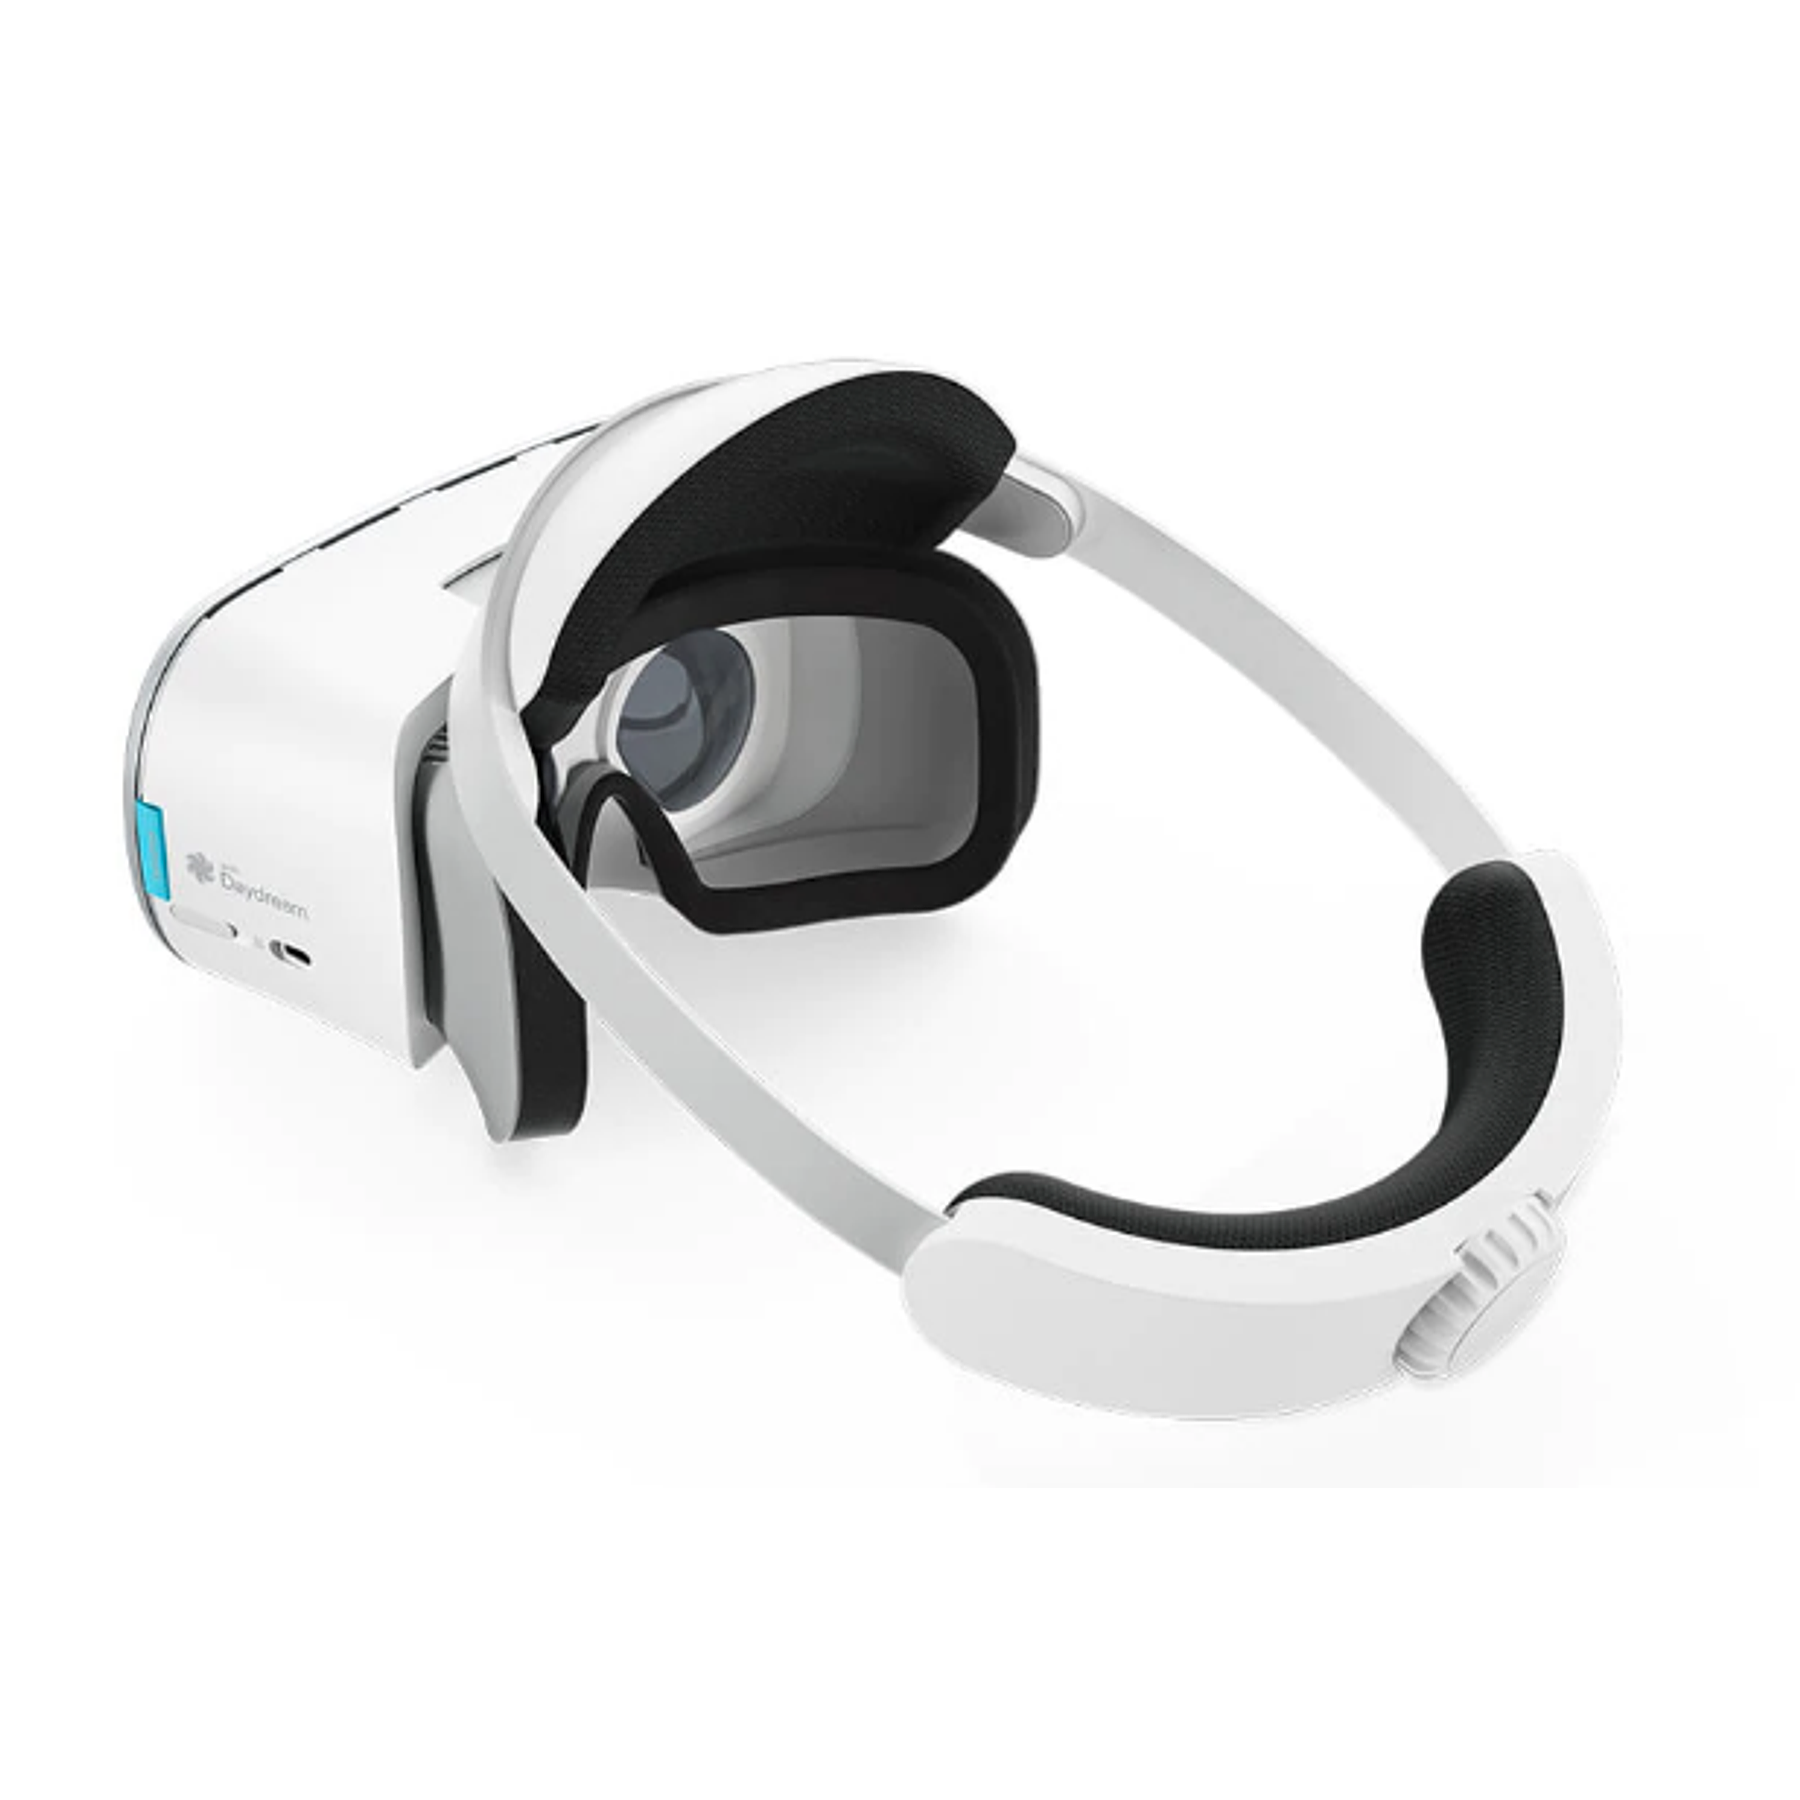 Lenovo Mirage Virtual Reality Lenses